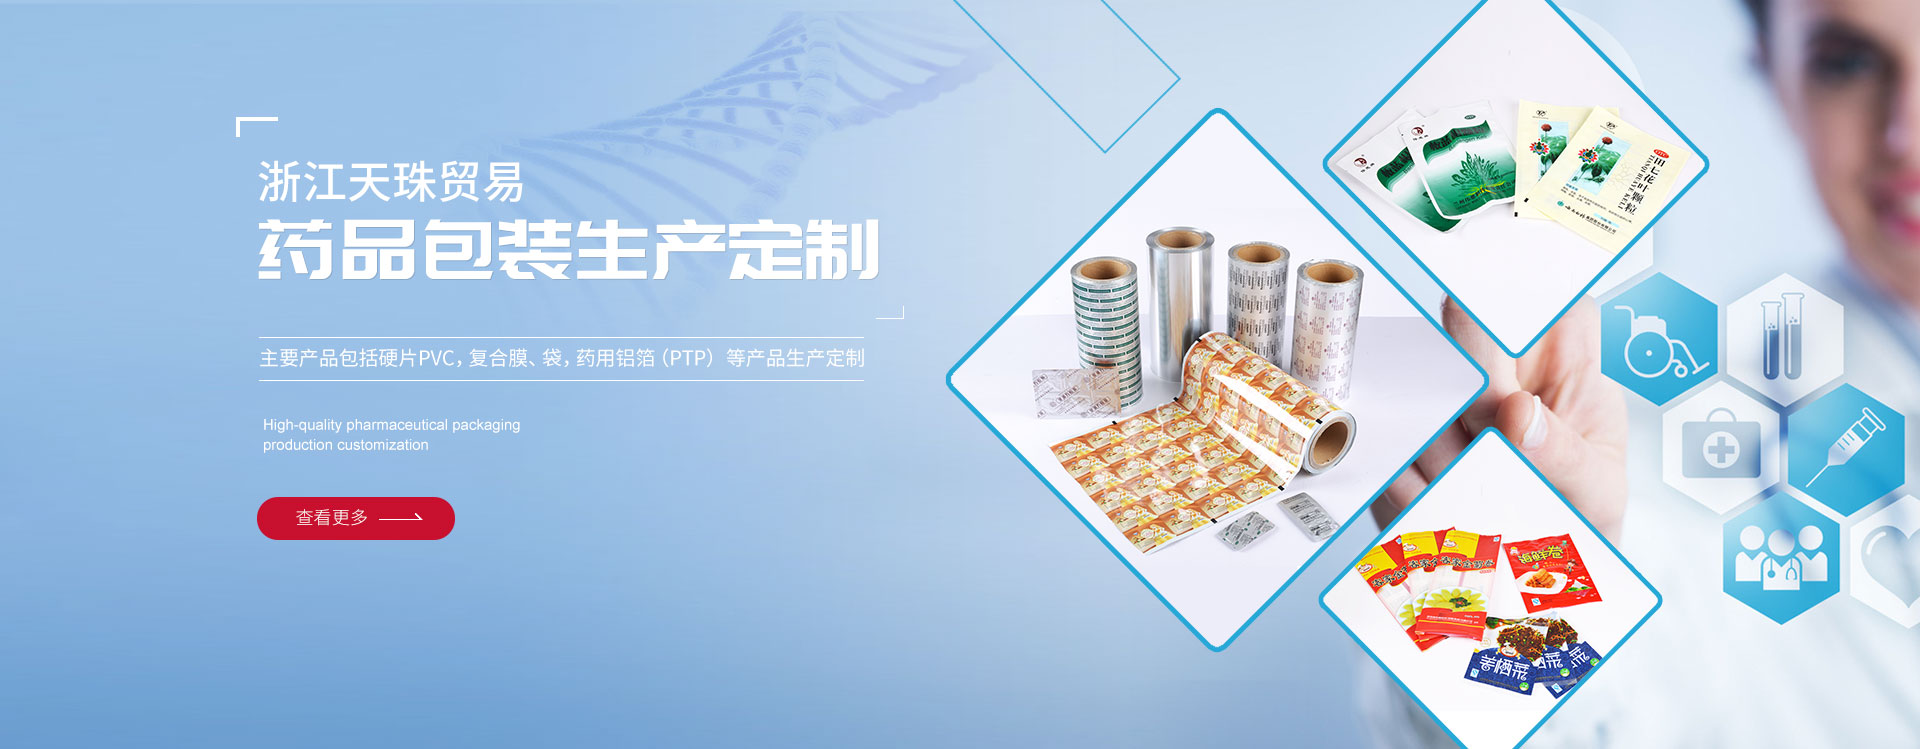 Zhejiang Tiancheng Pharmaceutical Packaging Co., Ltd